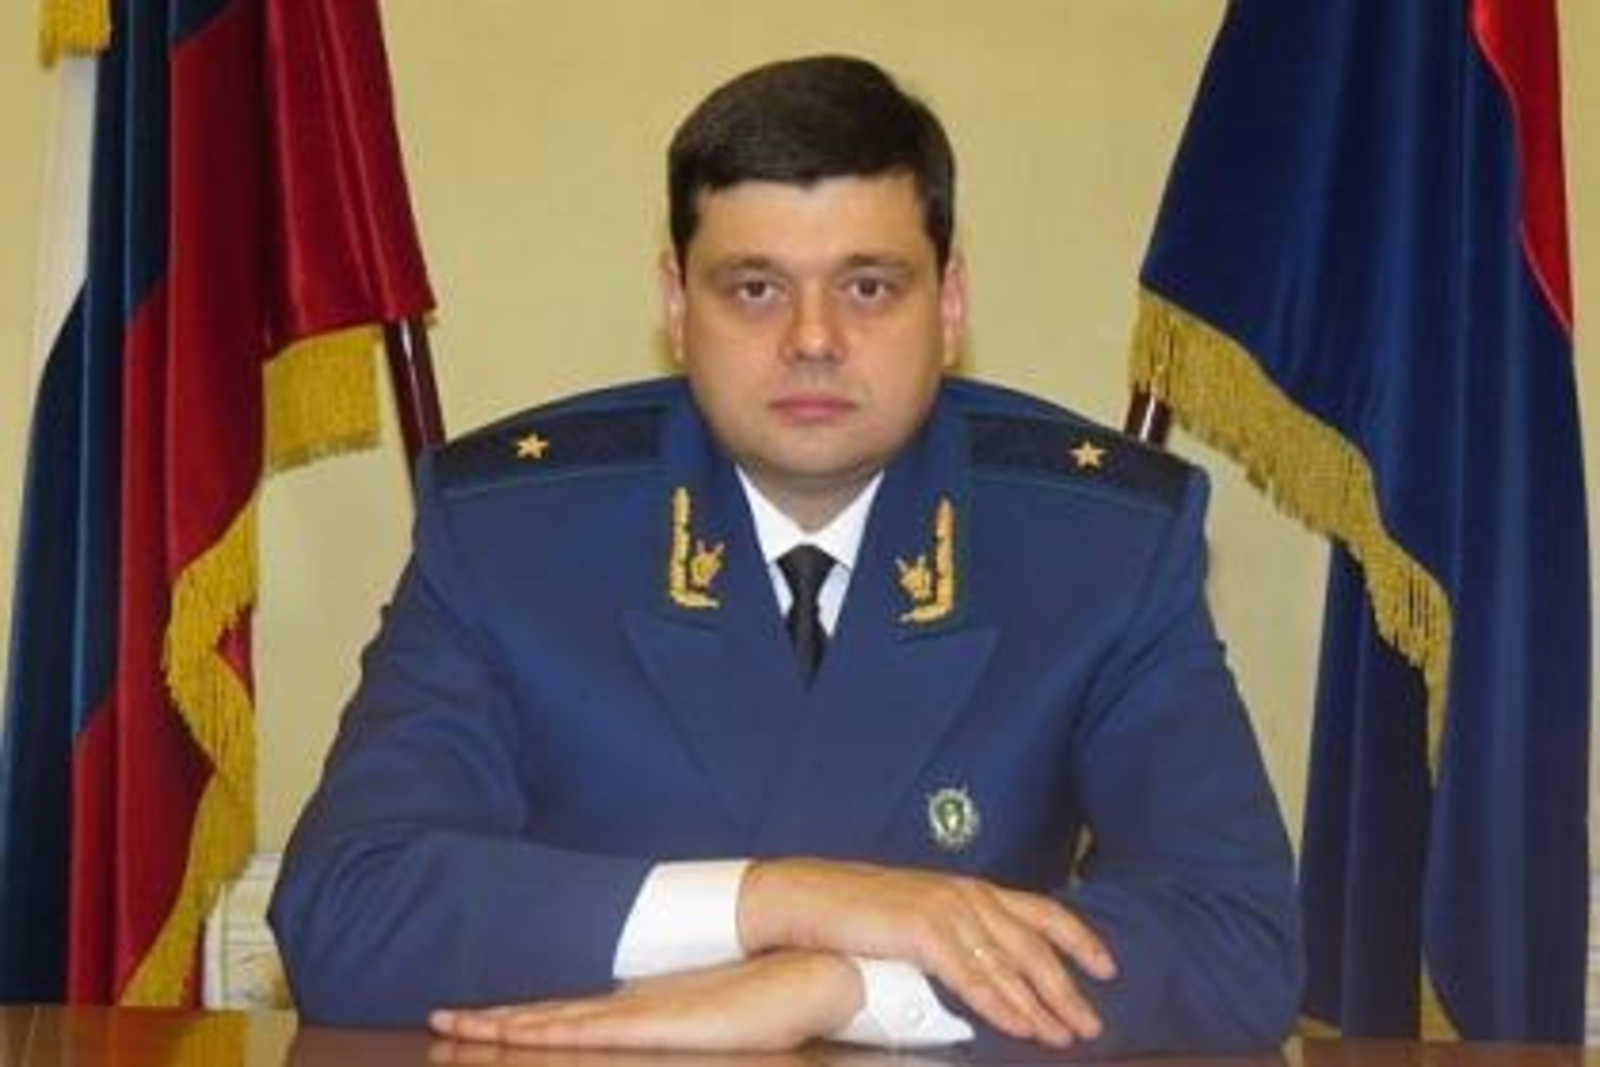 Прокурор Башкирии Владимир Ведерников освобожден от занимаемой должности - источник